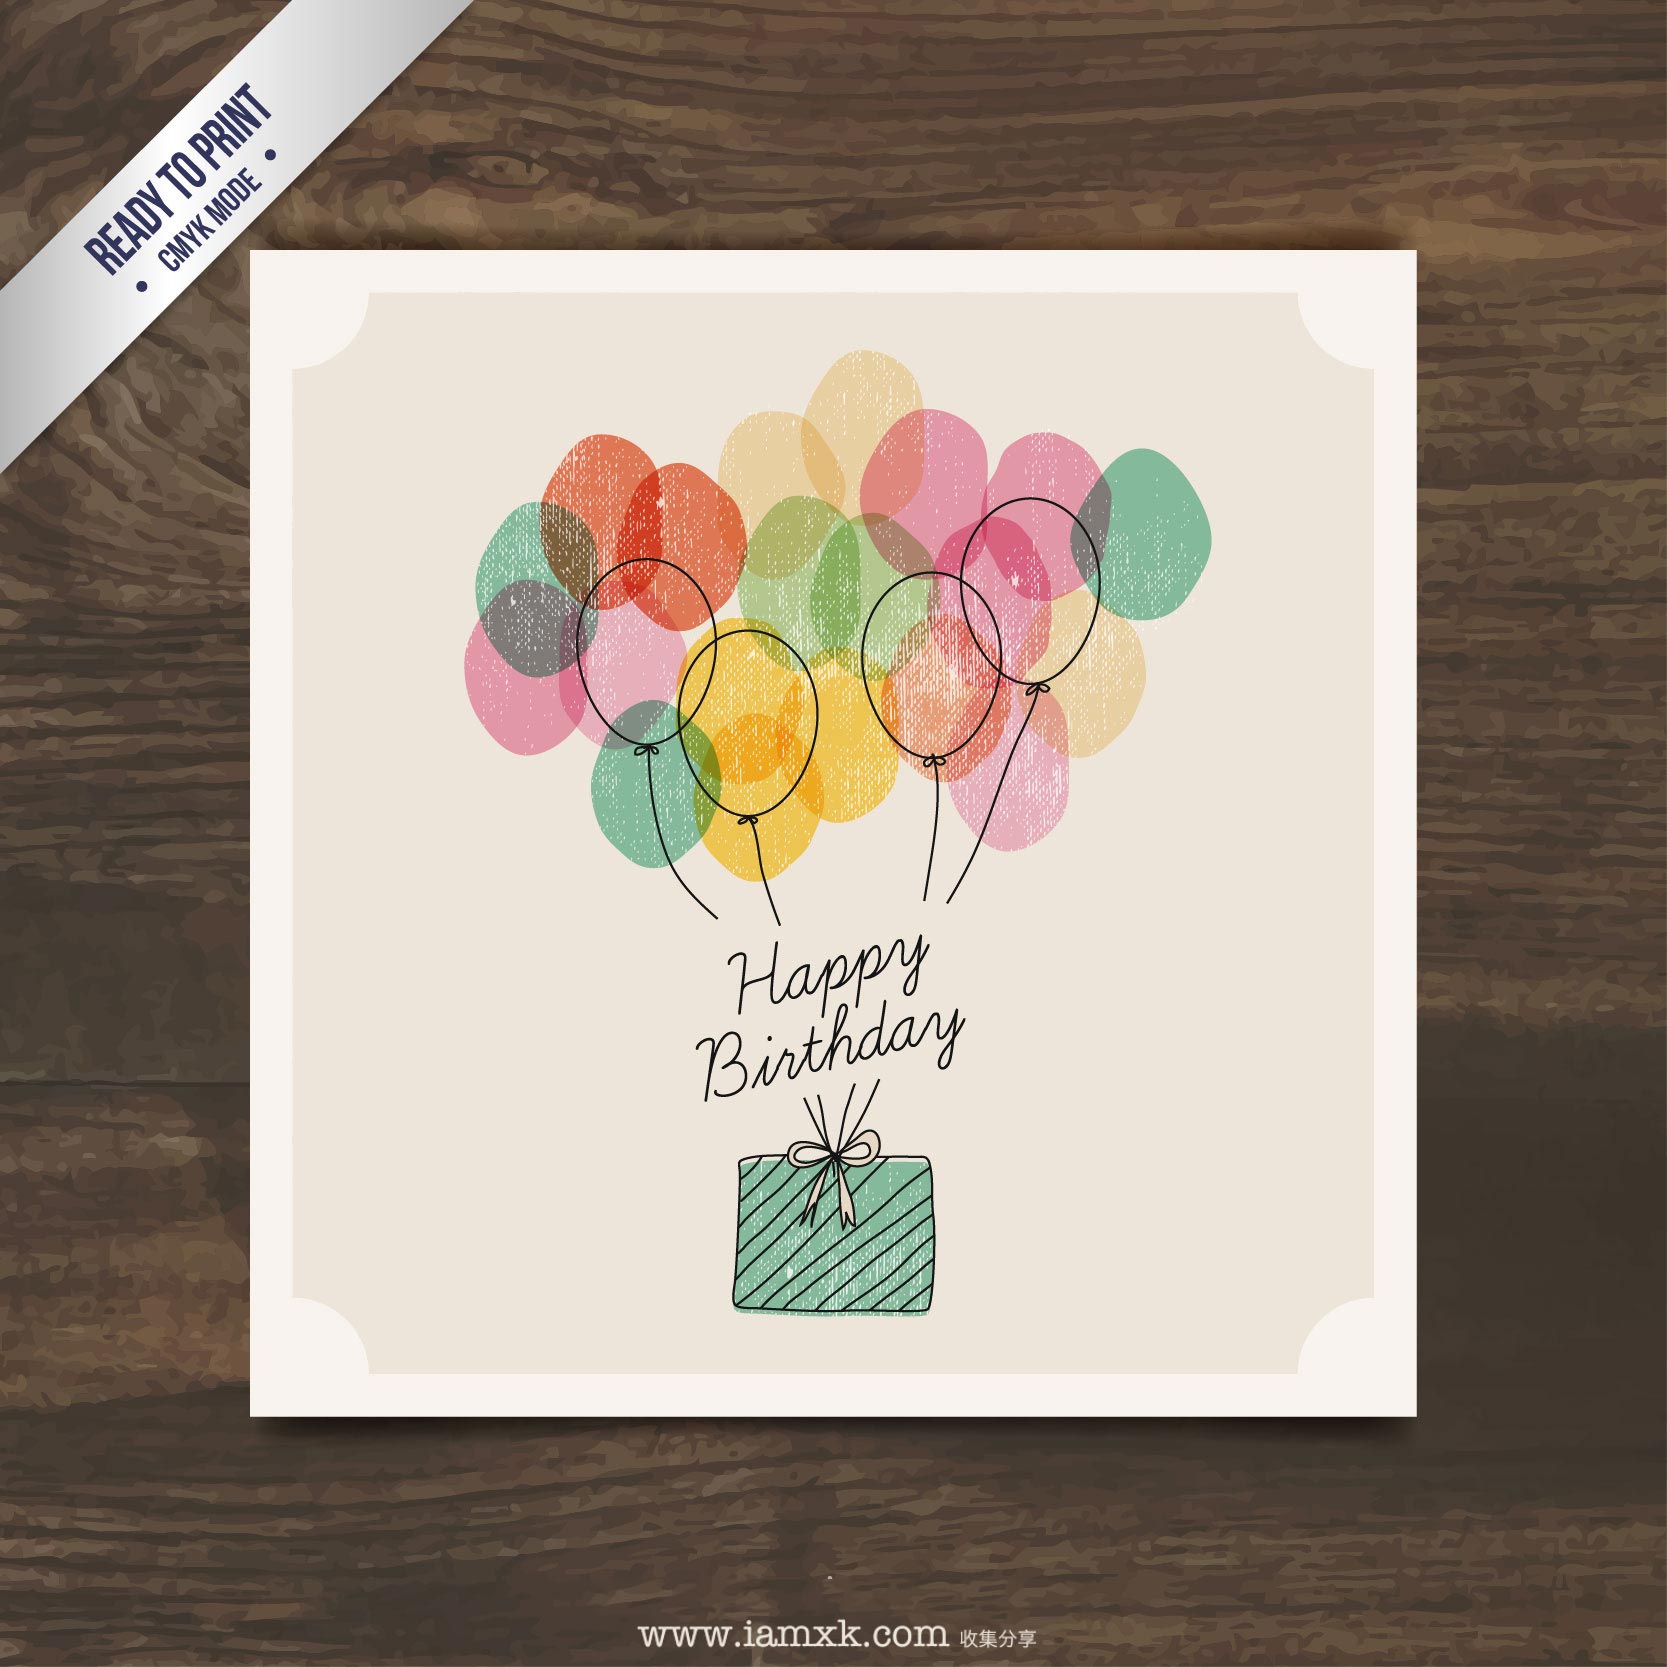 小清新生日贺卡 Watercolor Birthday Present with Balloons插图